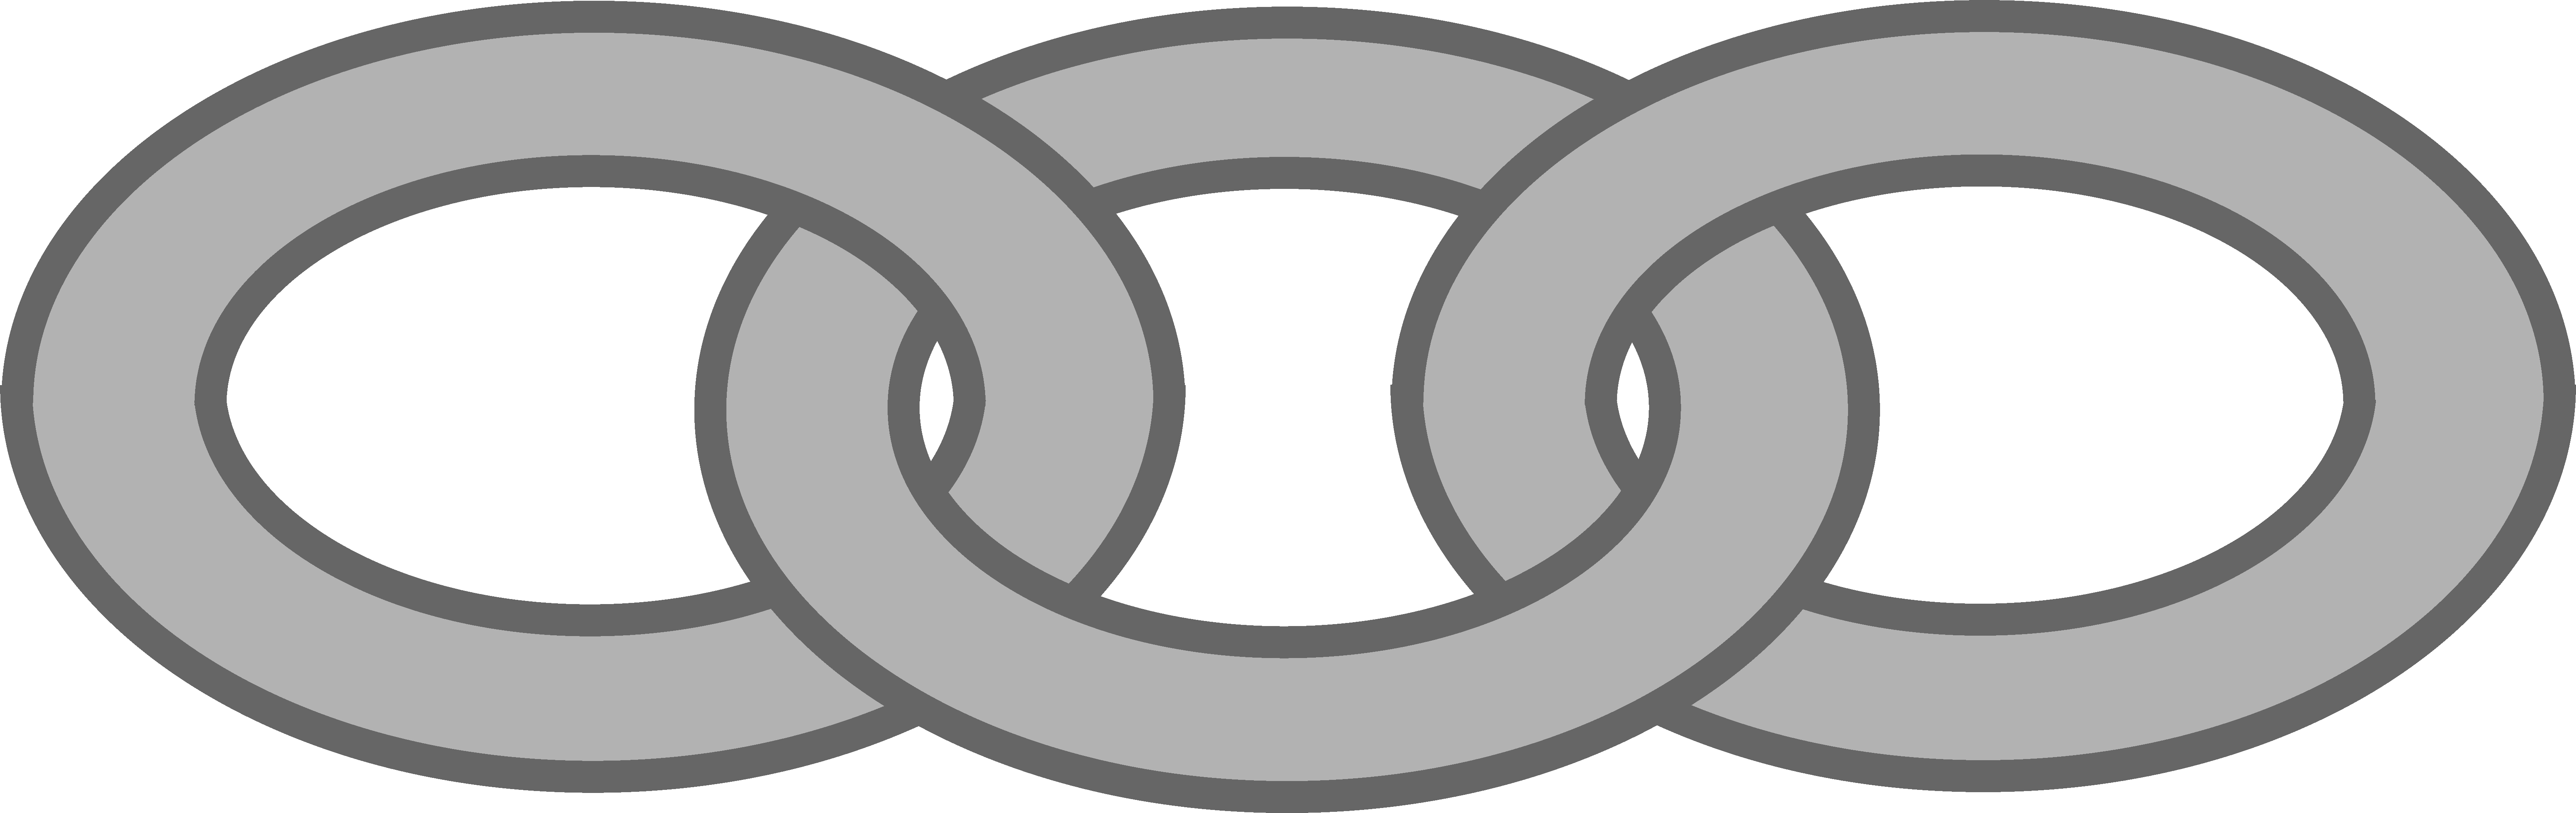 A Grey Chain Link Symbol